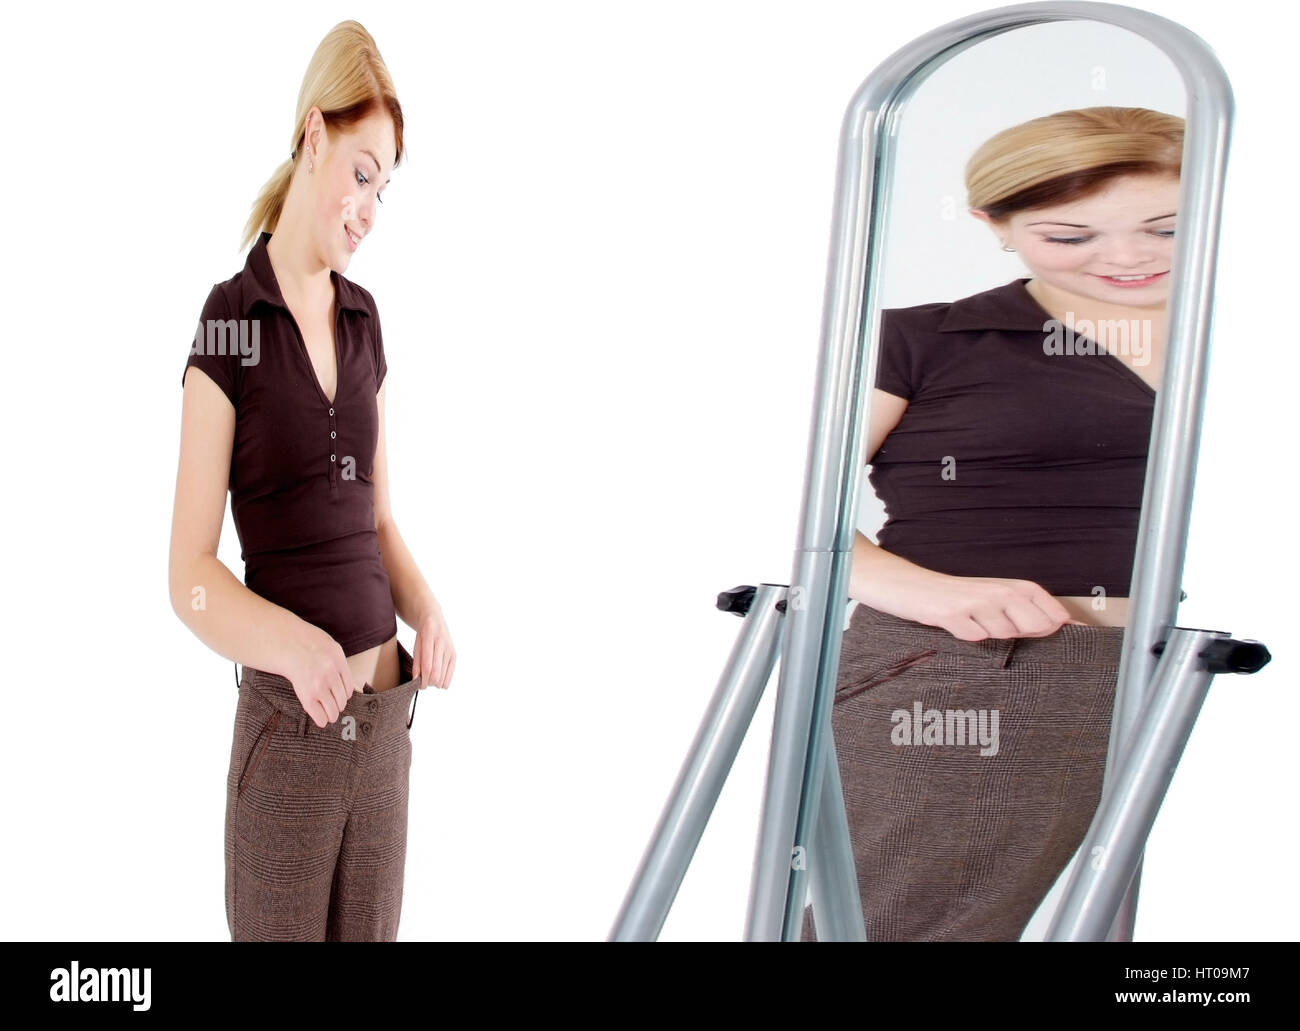 Junge Frau im Schlankheitswahn, magere Frau sieht sich im Spiegel als zu  dick - woman in slimming craze Stock Photo - Alamy